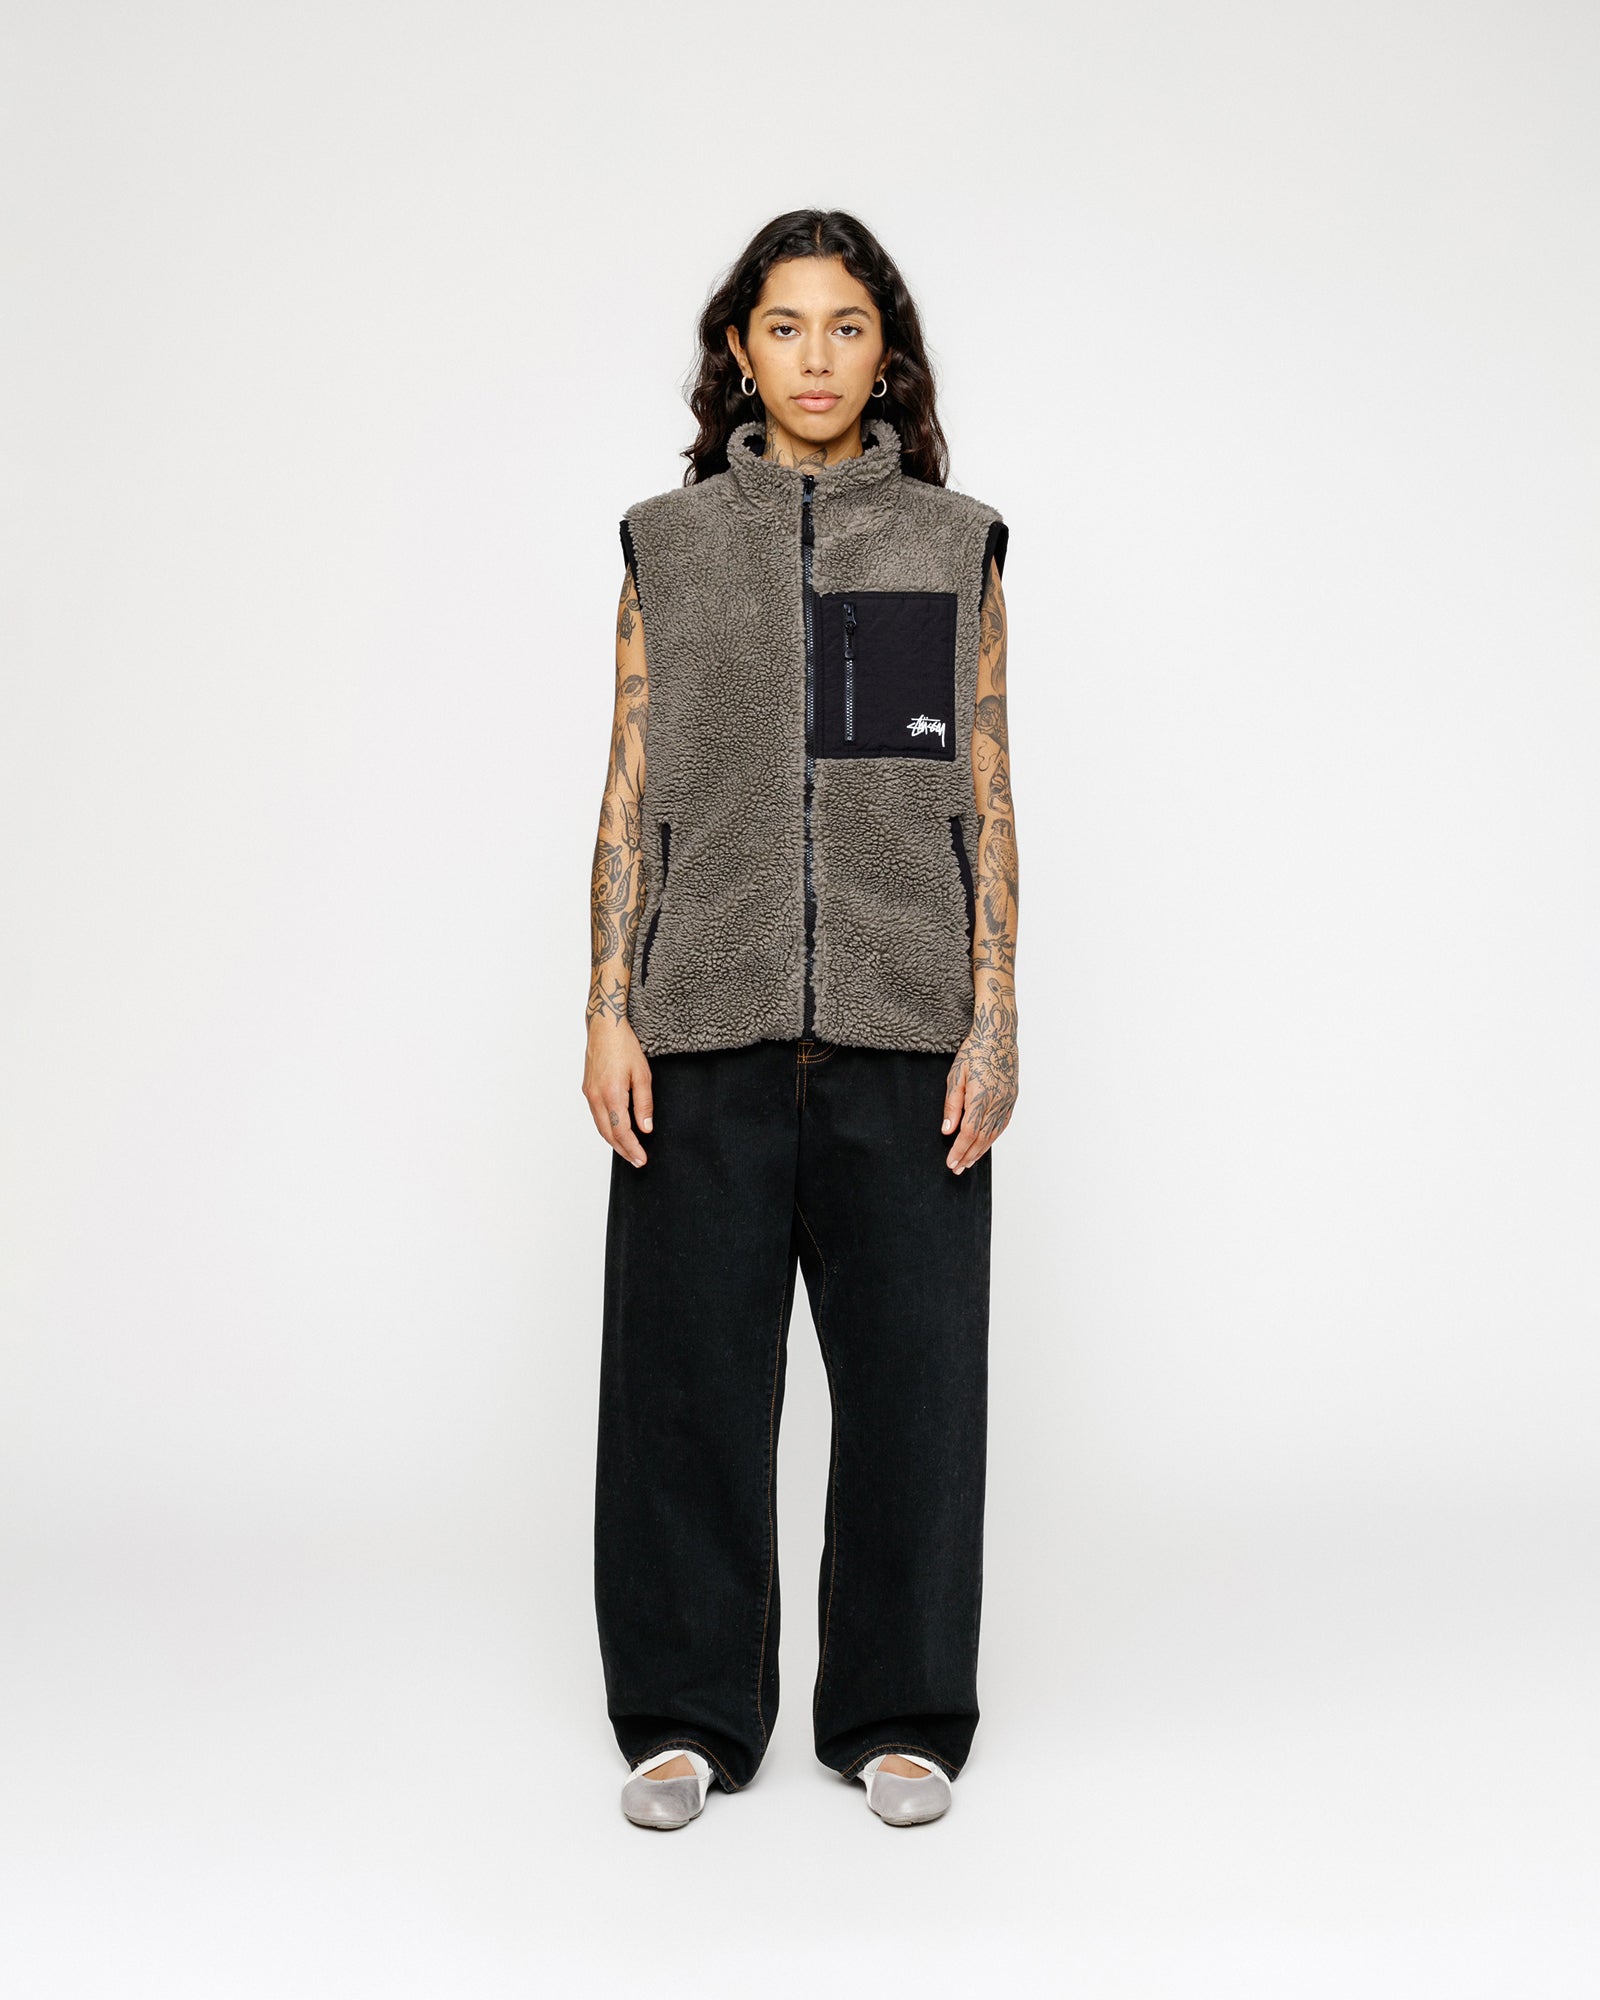 Stüssy Sherpa Reversible Vest Stone Outerwear